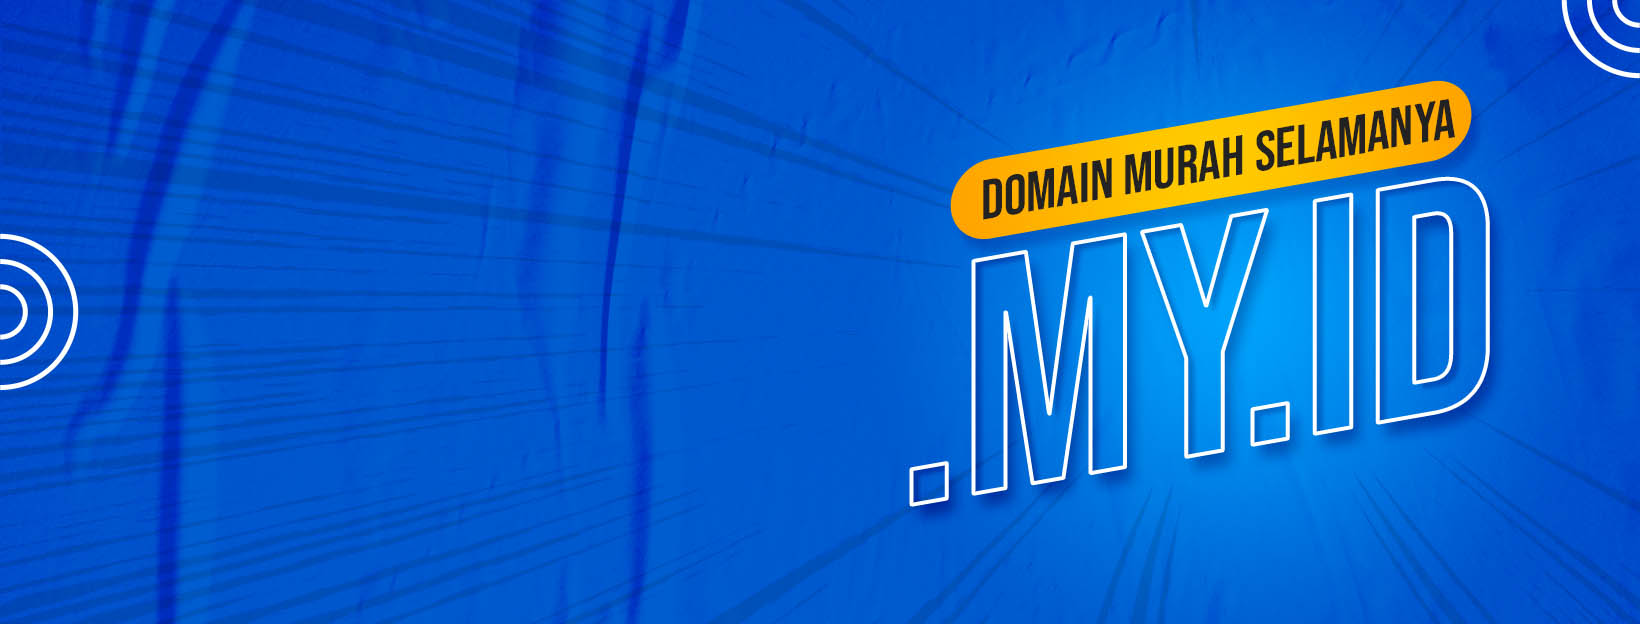 Domain .MY.ID Murah Selamanya